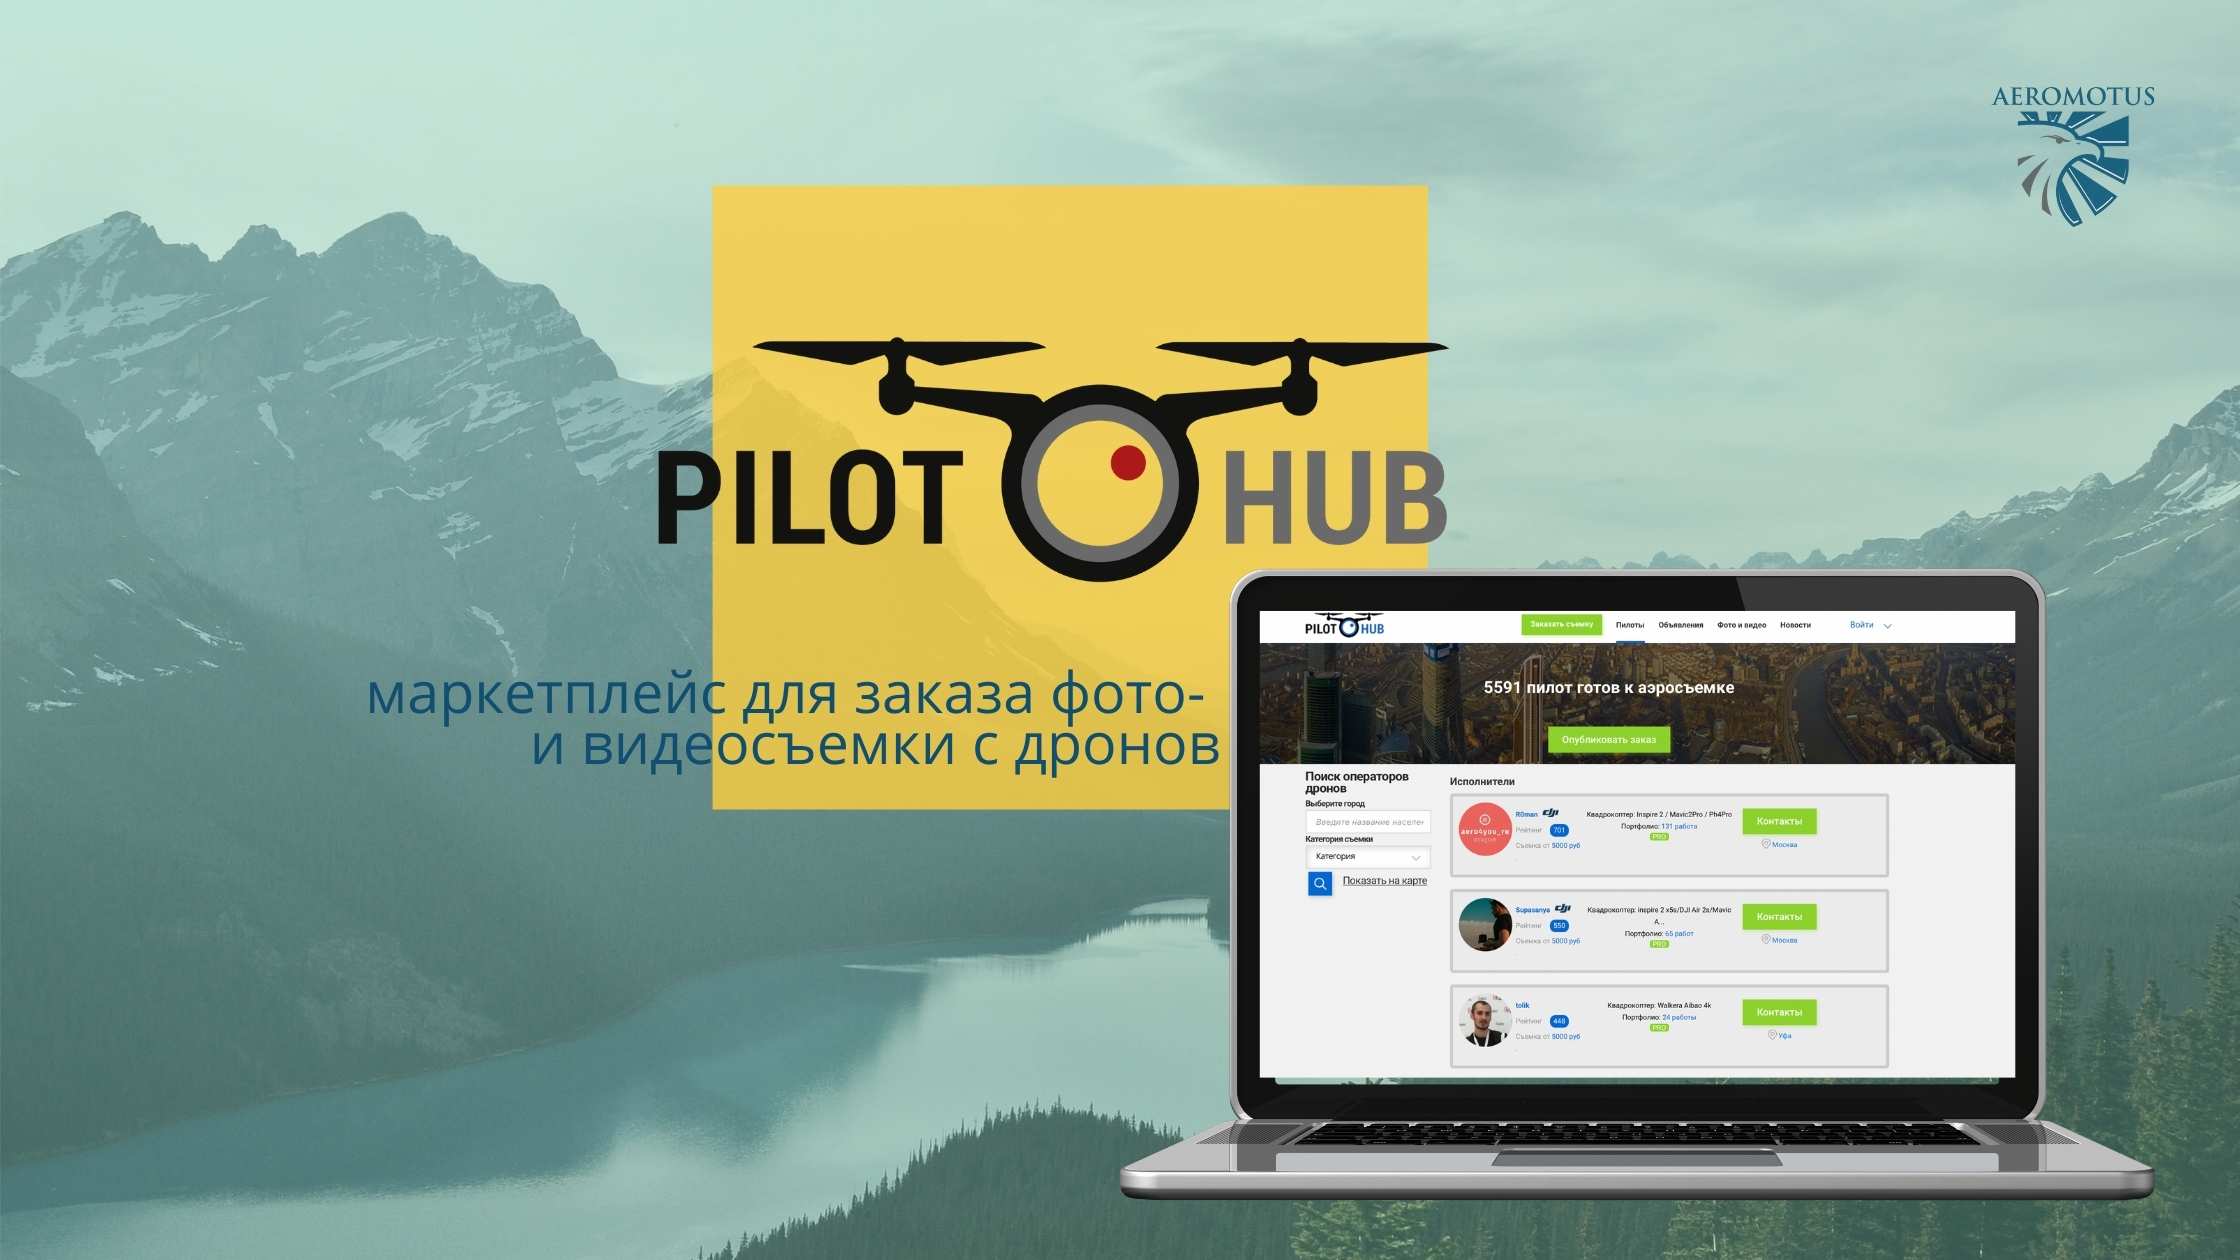 Pilothub — маркетплейс для заказа фото- и видеосъемки с дронов  - Обзор